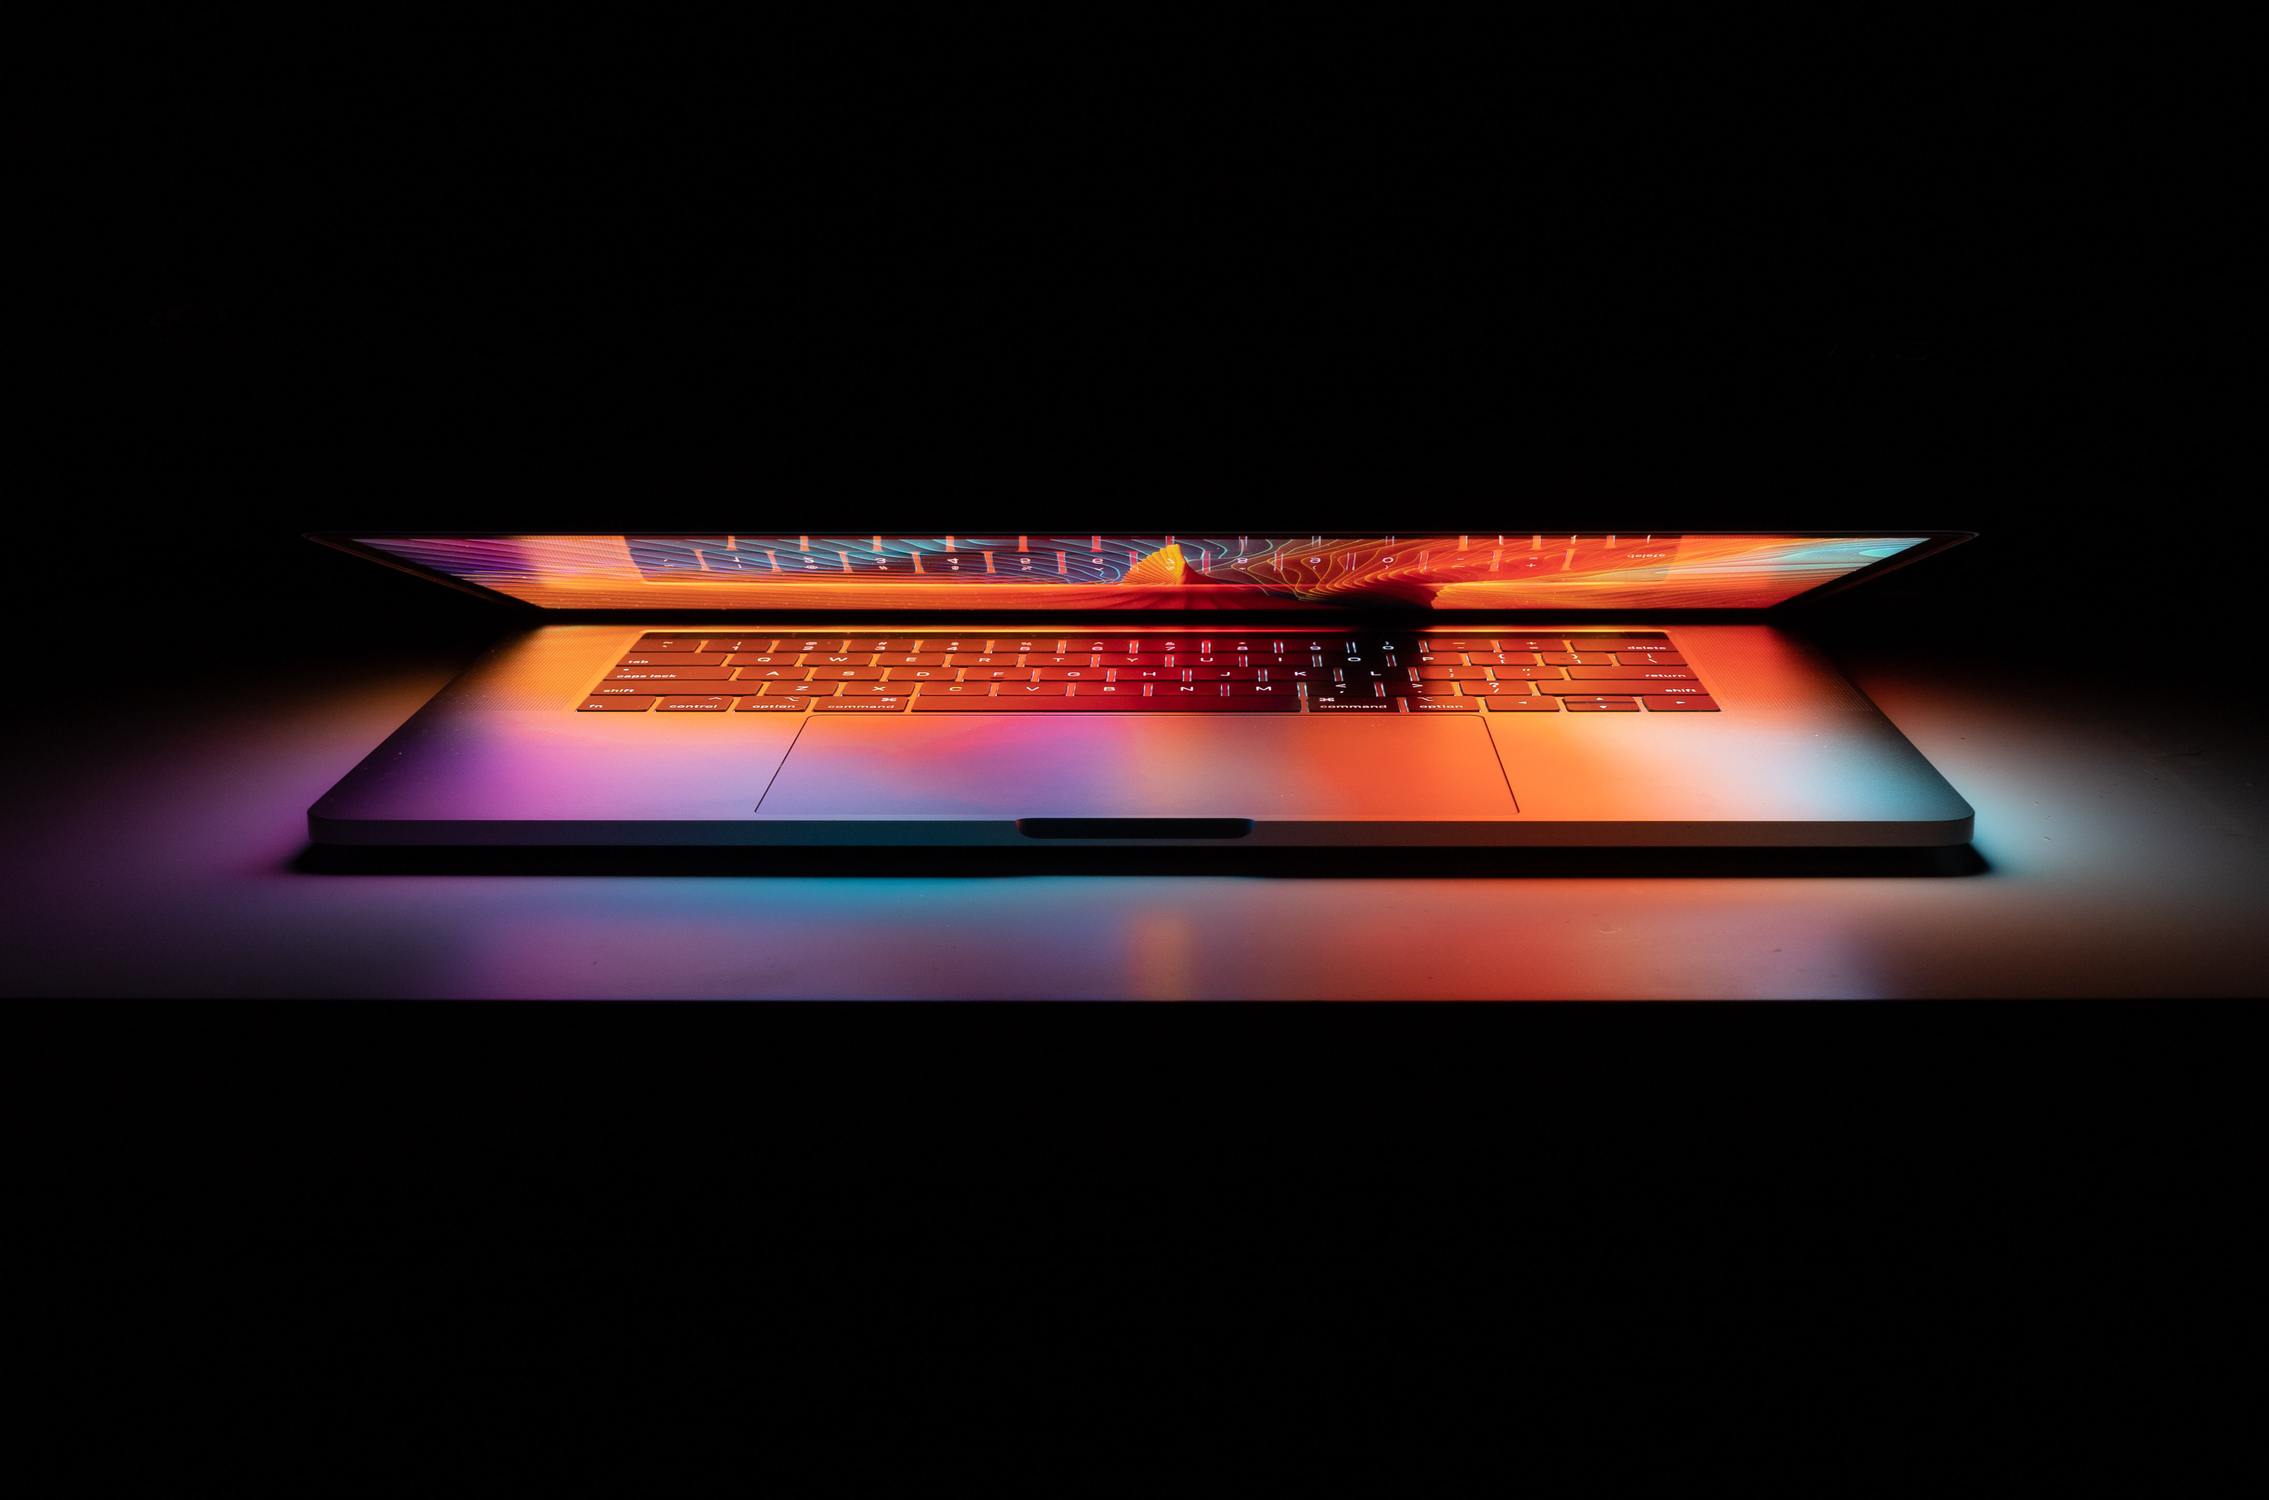 Leuchtender Computer, der Titelbild des Blogartikels zu Computer-Facts darstellt